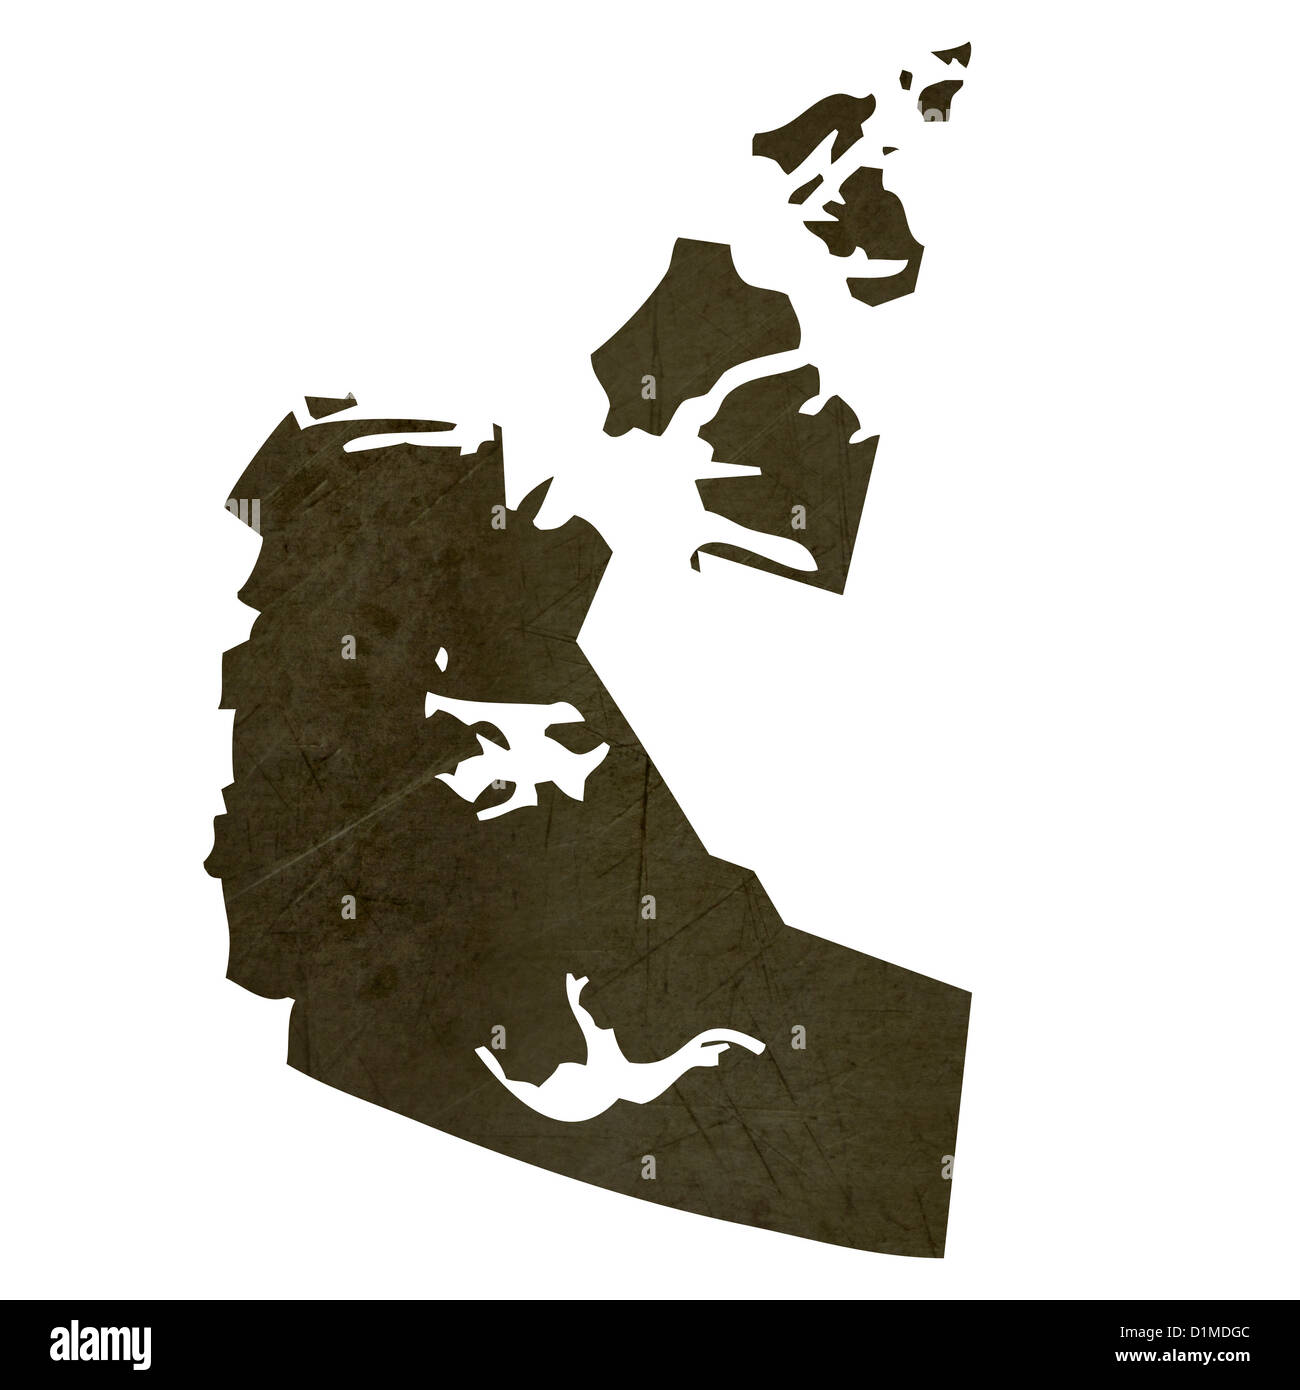 Dunkle Silhouette und strukturierte Karte von Nordwest-Territorien Provinz von Kanada isoliert auf weißem Hintergrund. Stockfoto